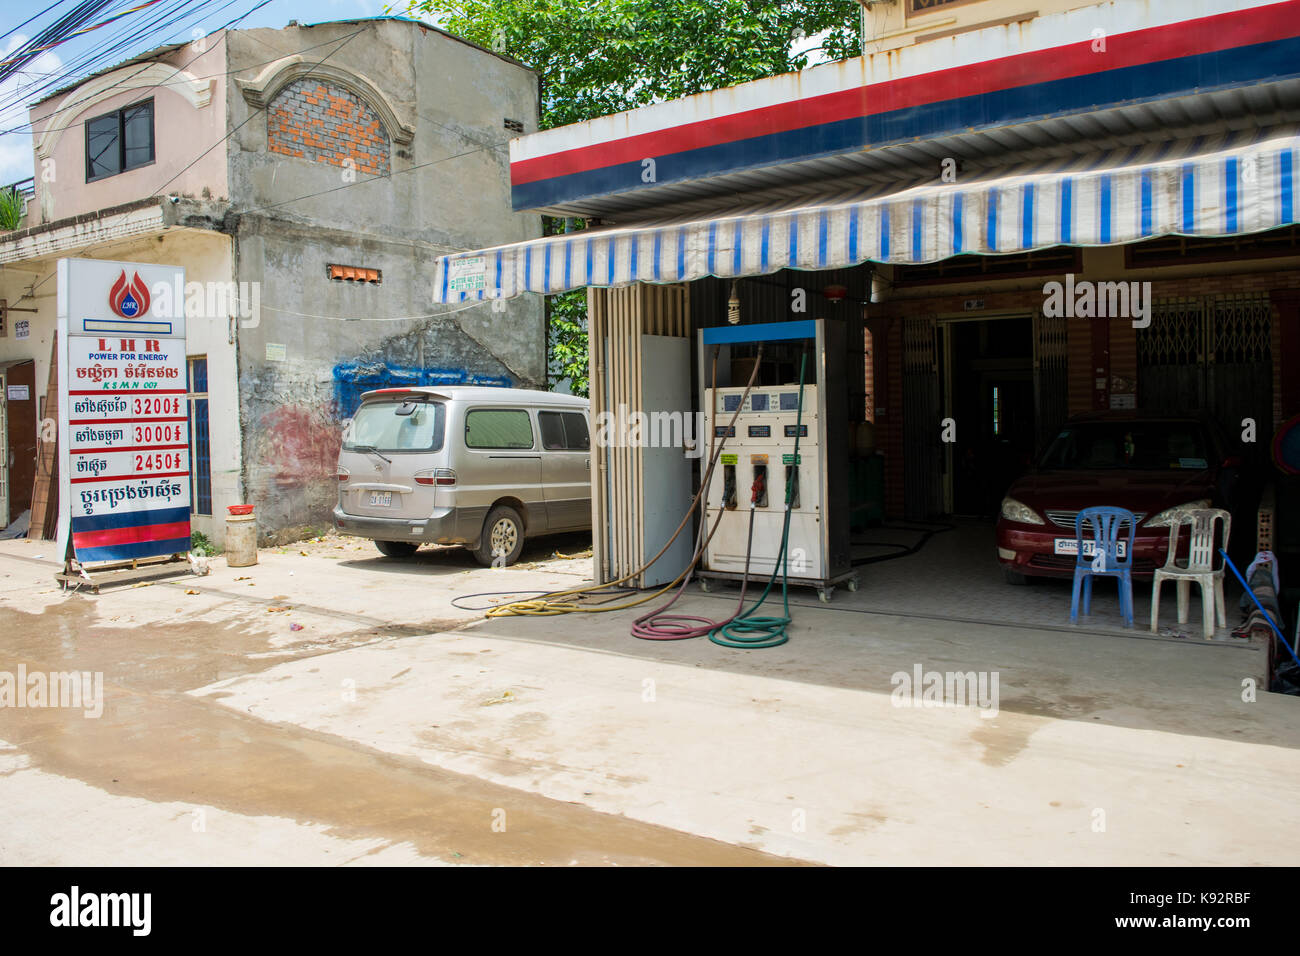 Eine Tankstelle/Tankstelle, in einer Straße von Phnom Penh, Kambodscha. Keine Kunden sind am Bahnhof Brennstoff für ihre Autos zu erhalten. Süd Ost Asien. Stockfoto